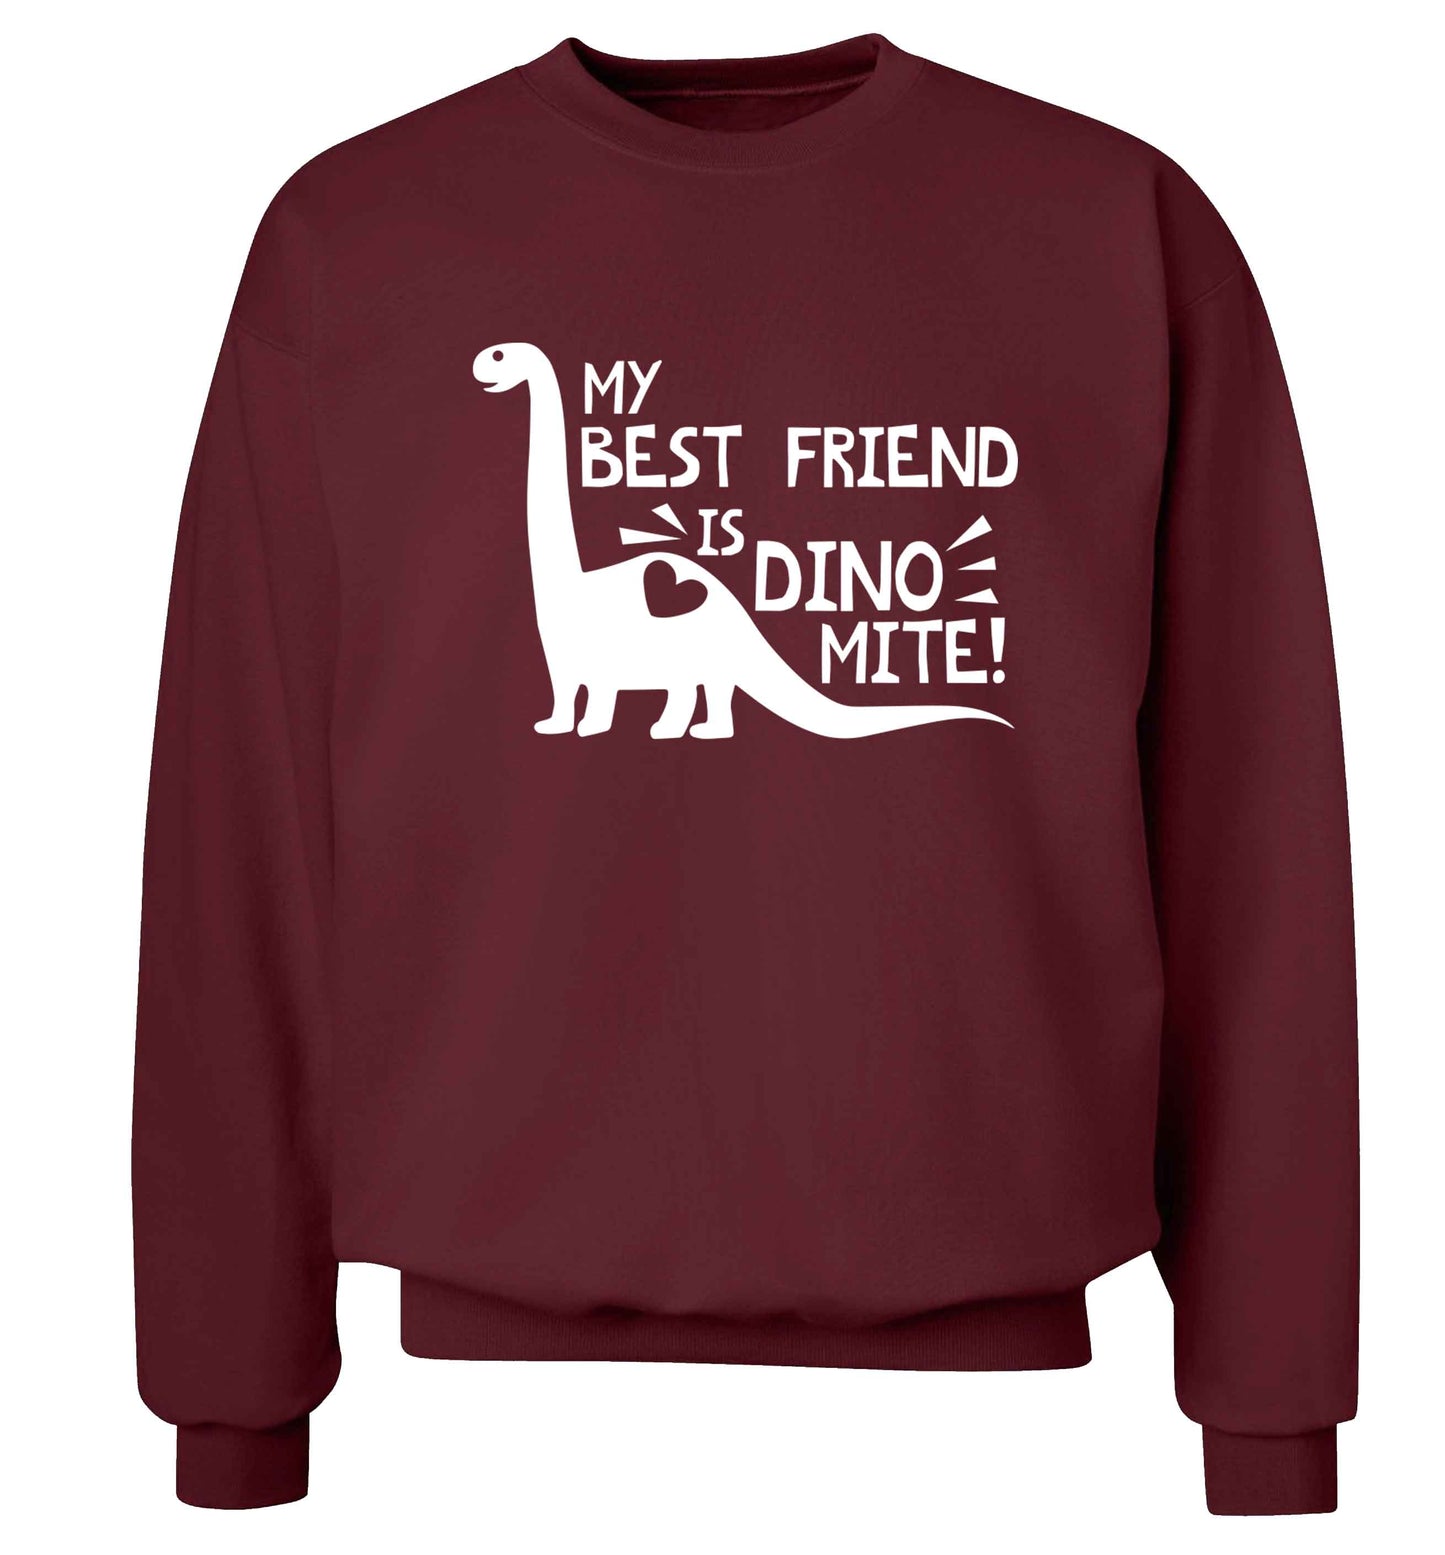 My best friend is dinomite! Adult's unisex maroon Sweater 2XL